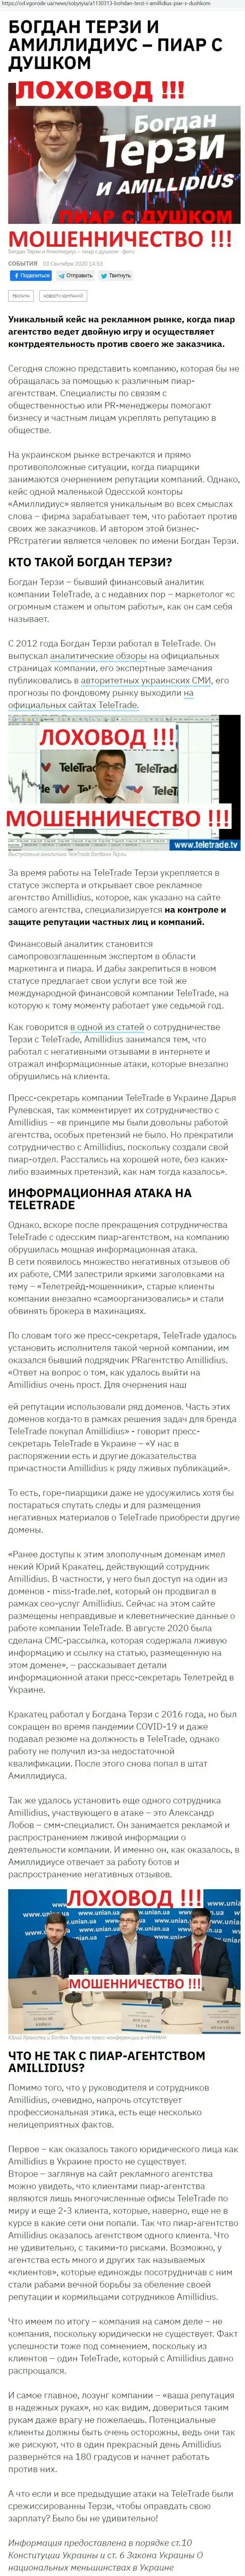 Богдан Терзи рискованный партнёр, инфа со слов бывшего работника фирмы Амиллидиус Ком